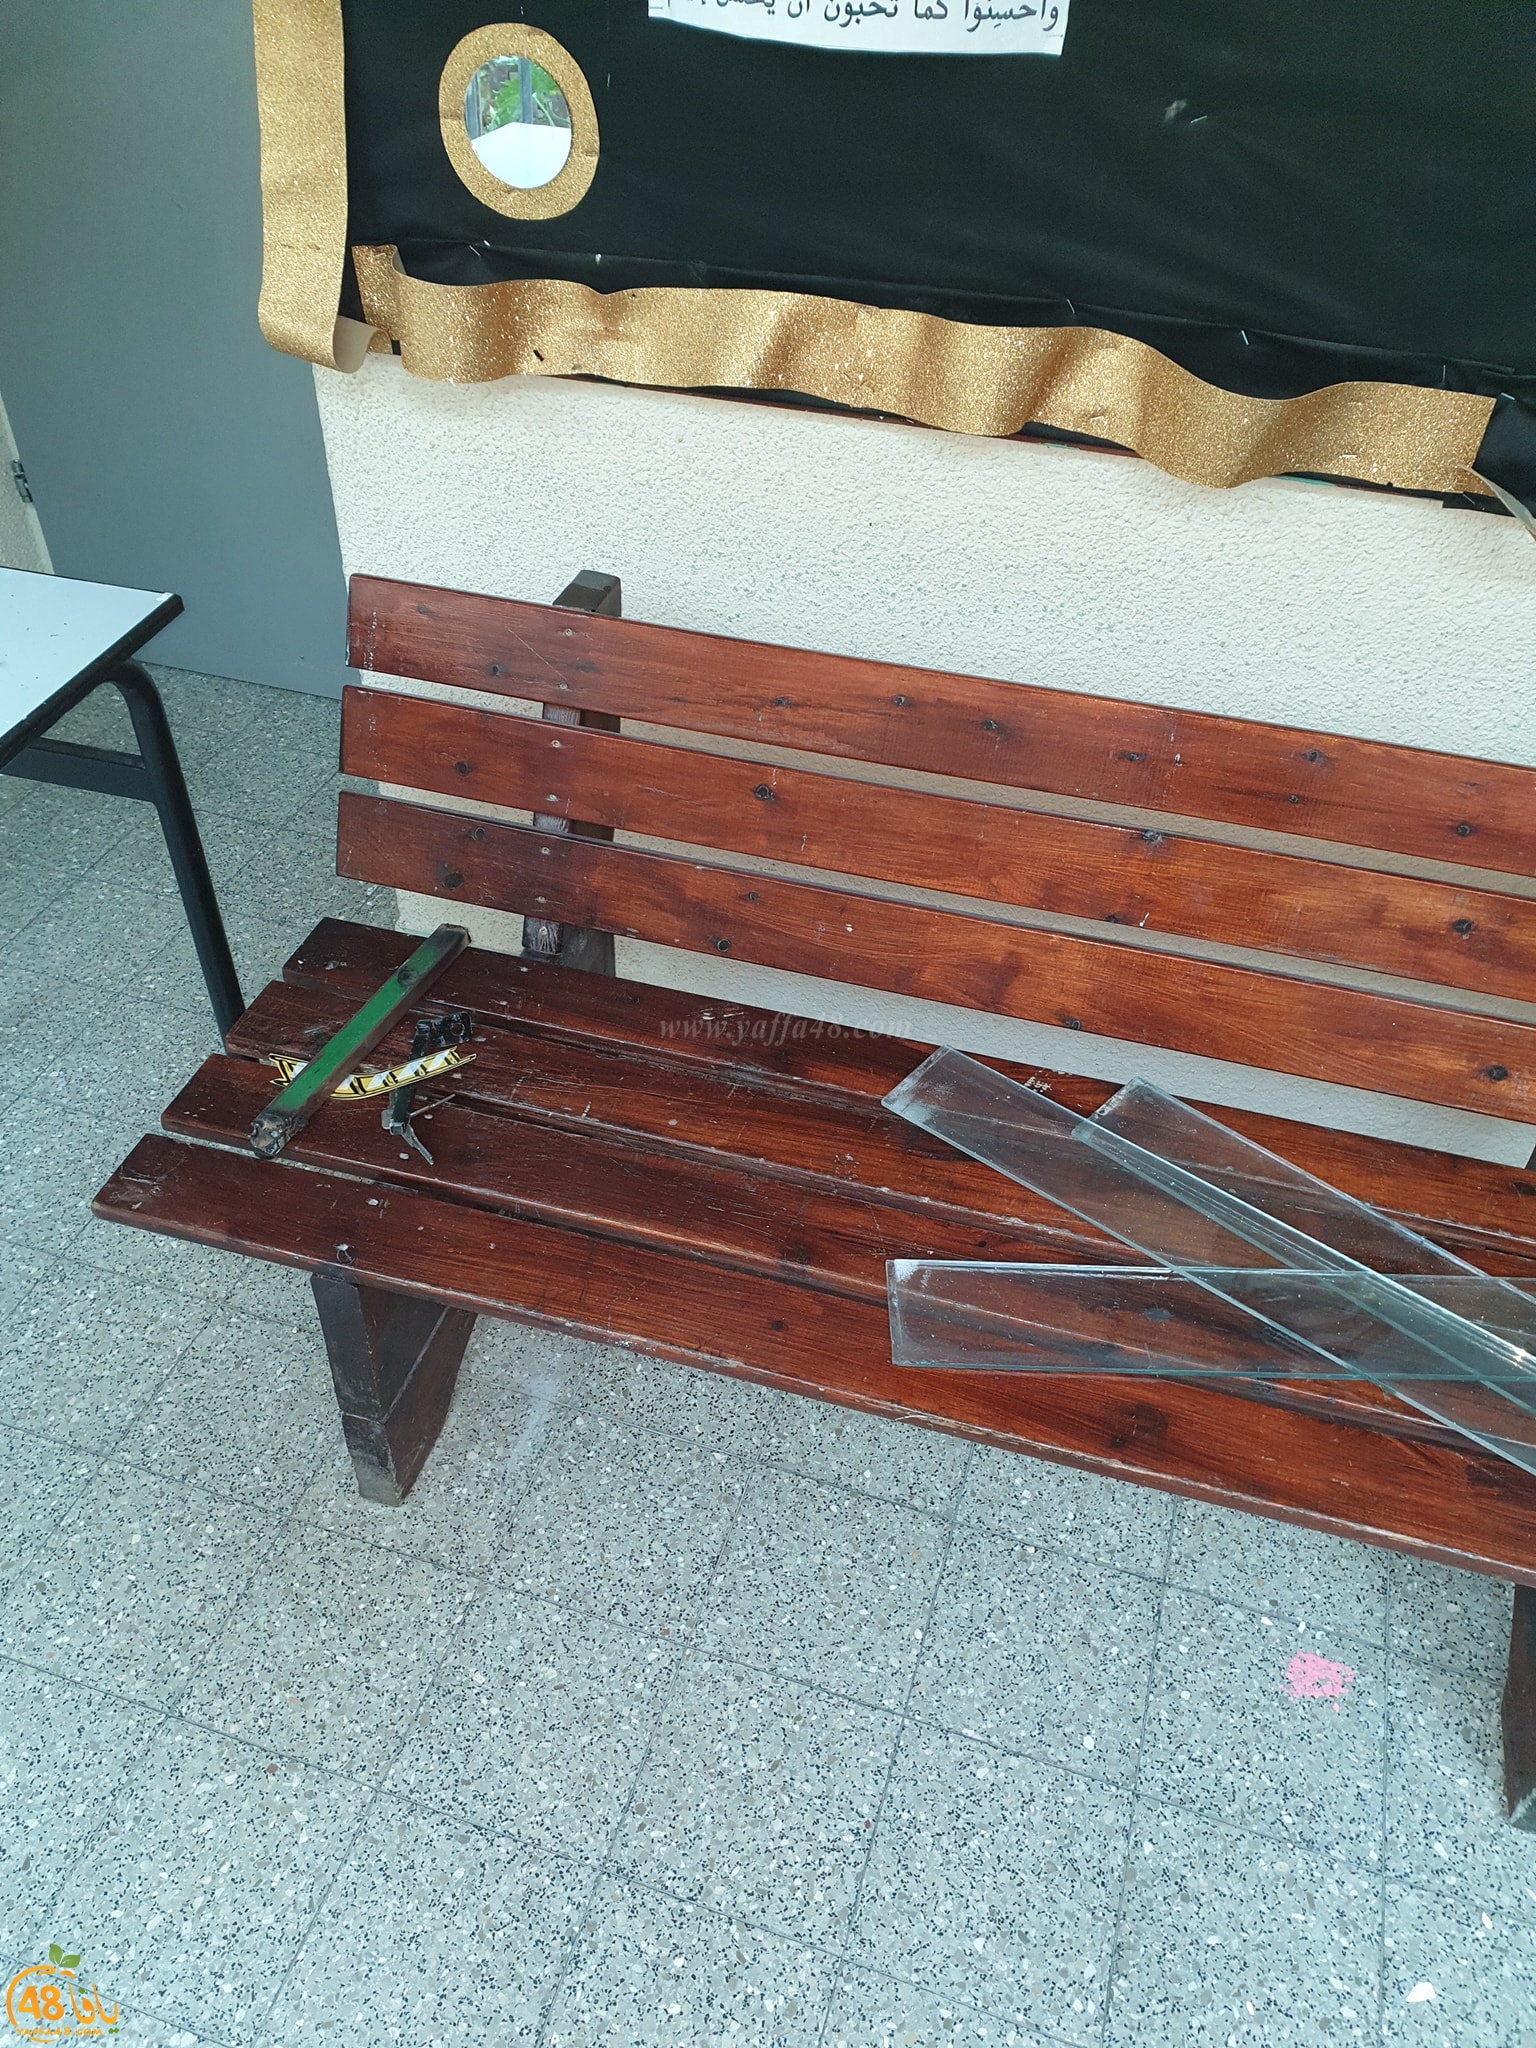  فيديو: تخريب ممتلكات وسرقة محتويات مدرسة الياسمين في مدينة اللد 